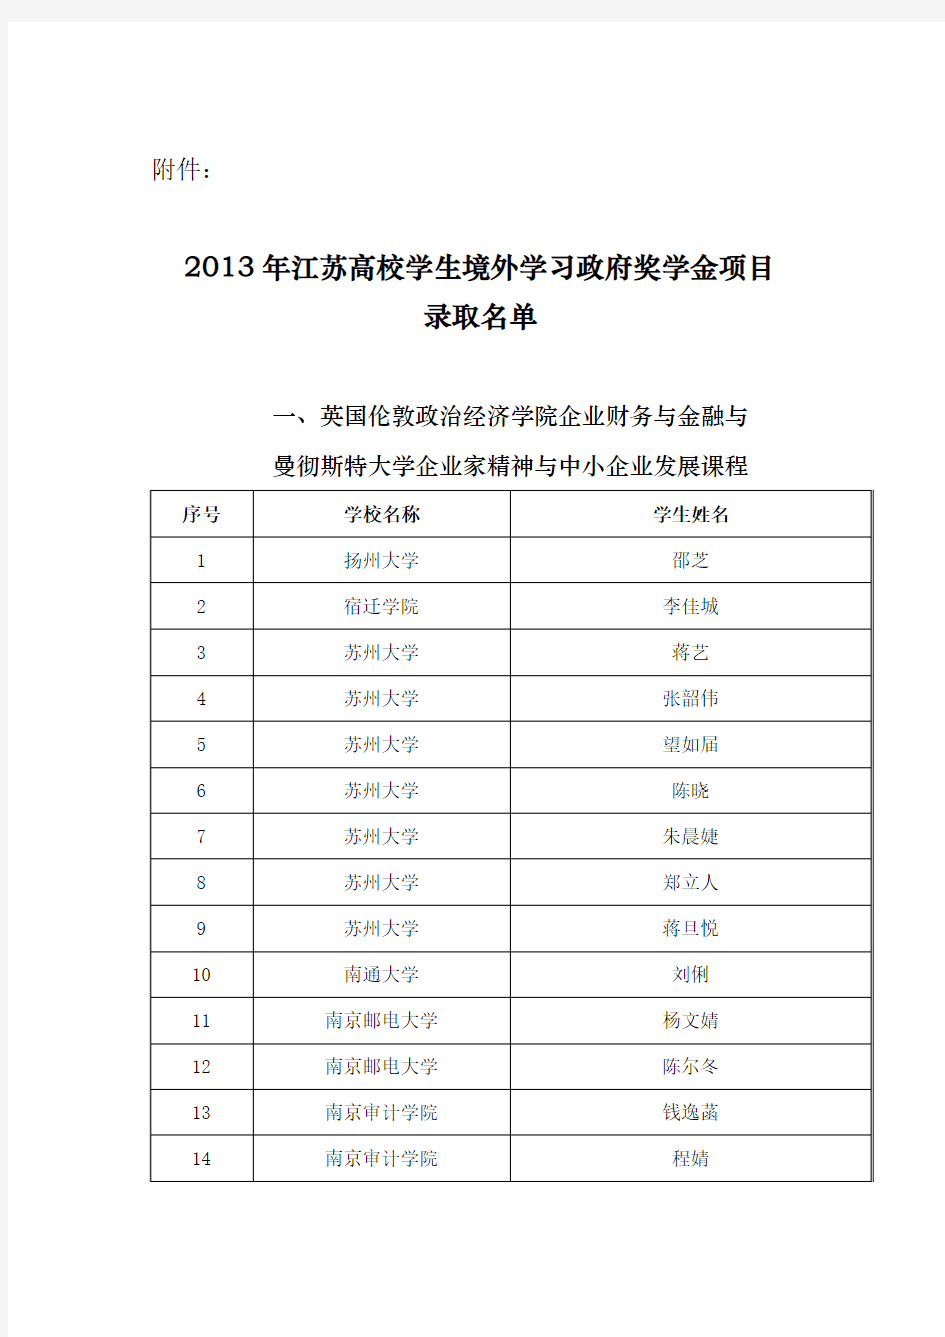 2013年江苏高校学生境外学习政府奖学金项目录取名单